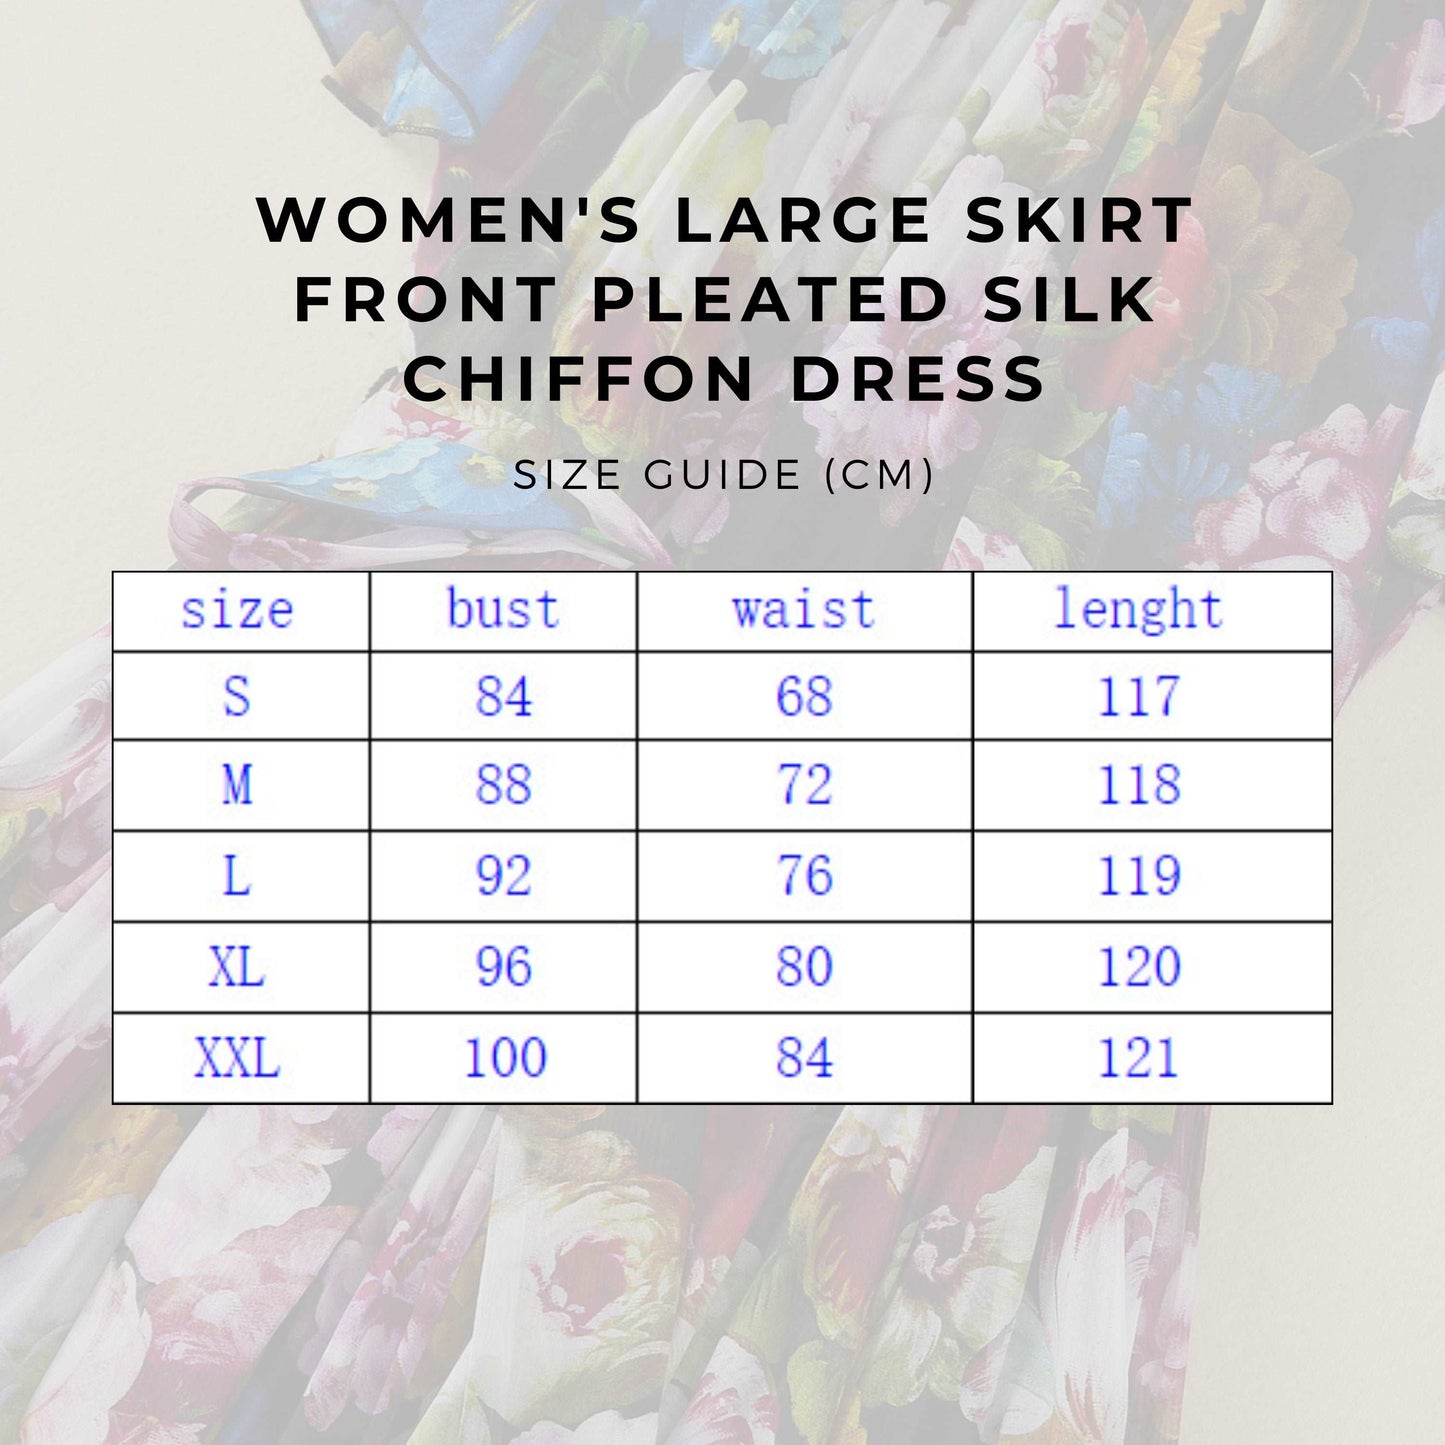 Women's Large Skirt Front Pleated Silk Chiffon Dress